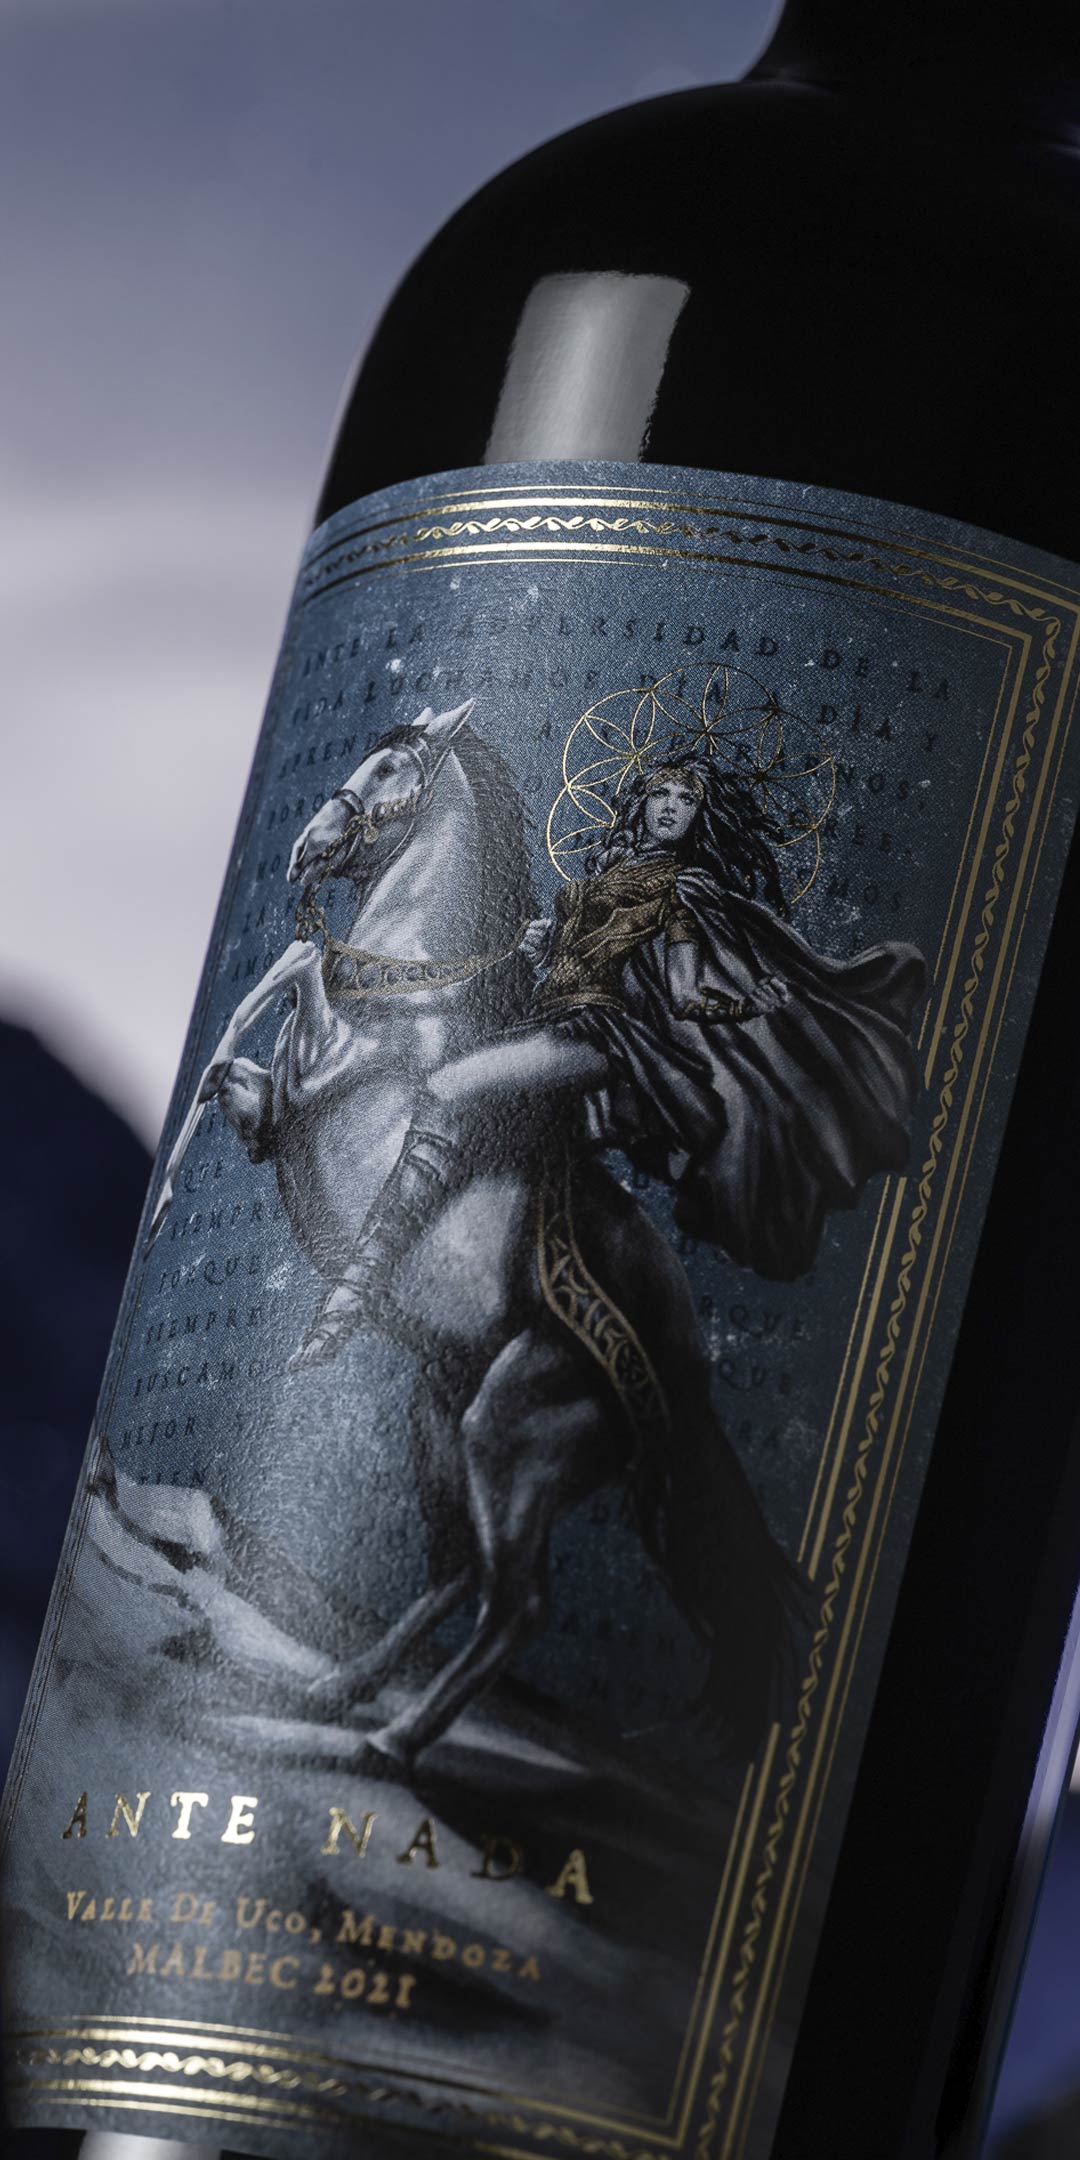 Ante Nada wine label design illustration Mendoza Argentina Woman Gold and blue